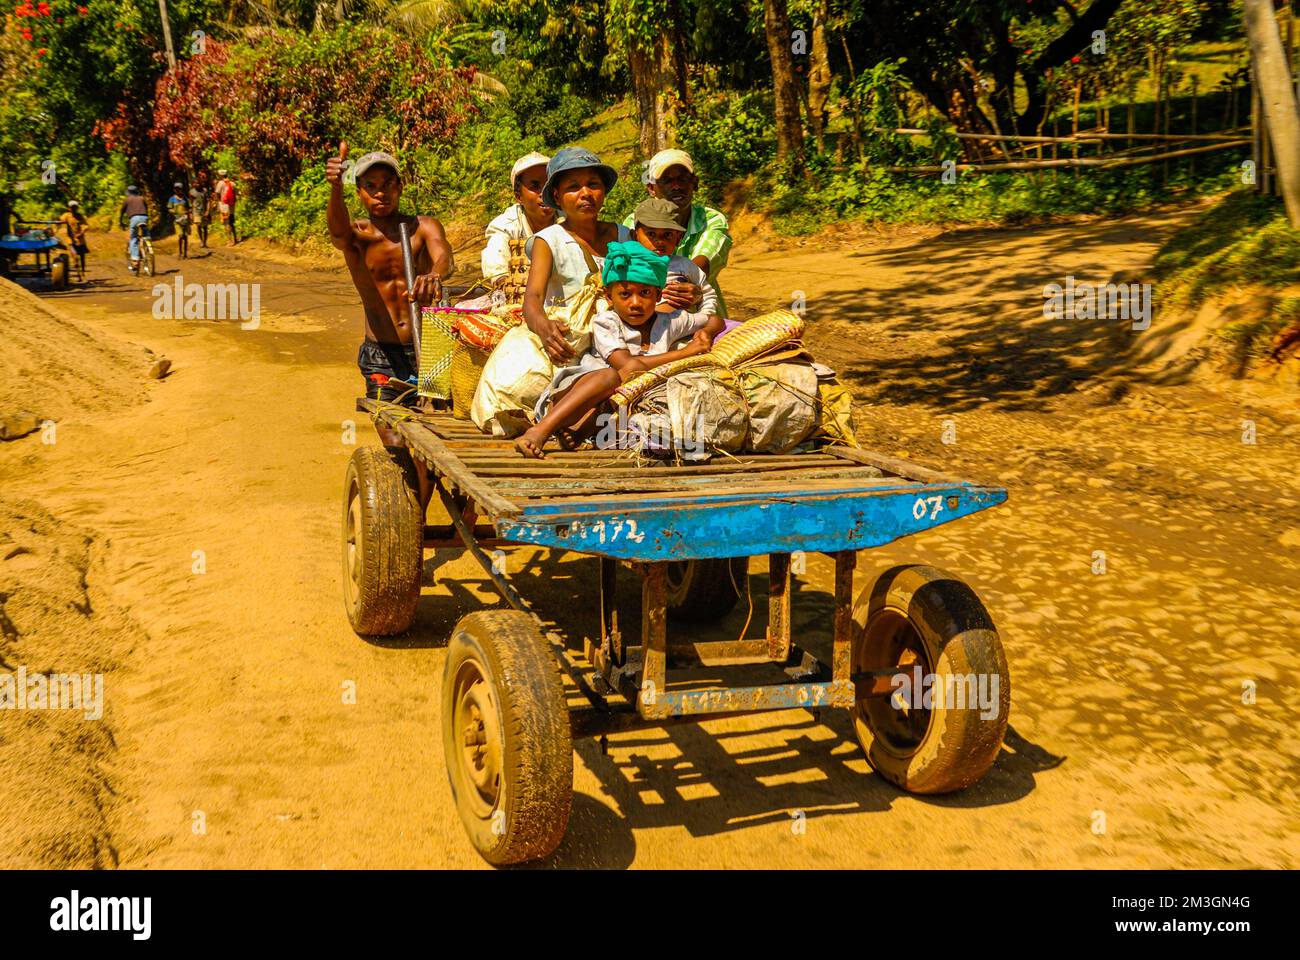 Personnes sur une voiturette de randonnée, Taomasina, Madagascar, Océan Indien Banque D'Images